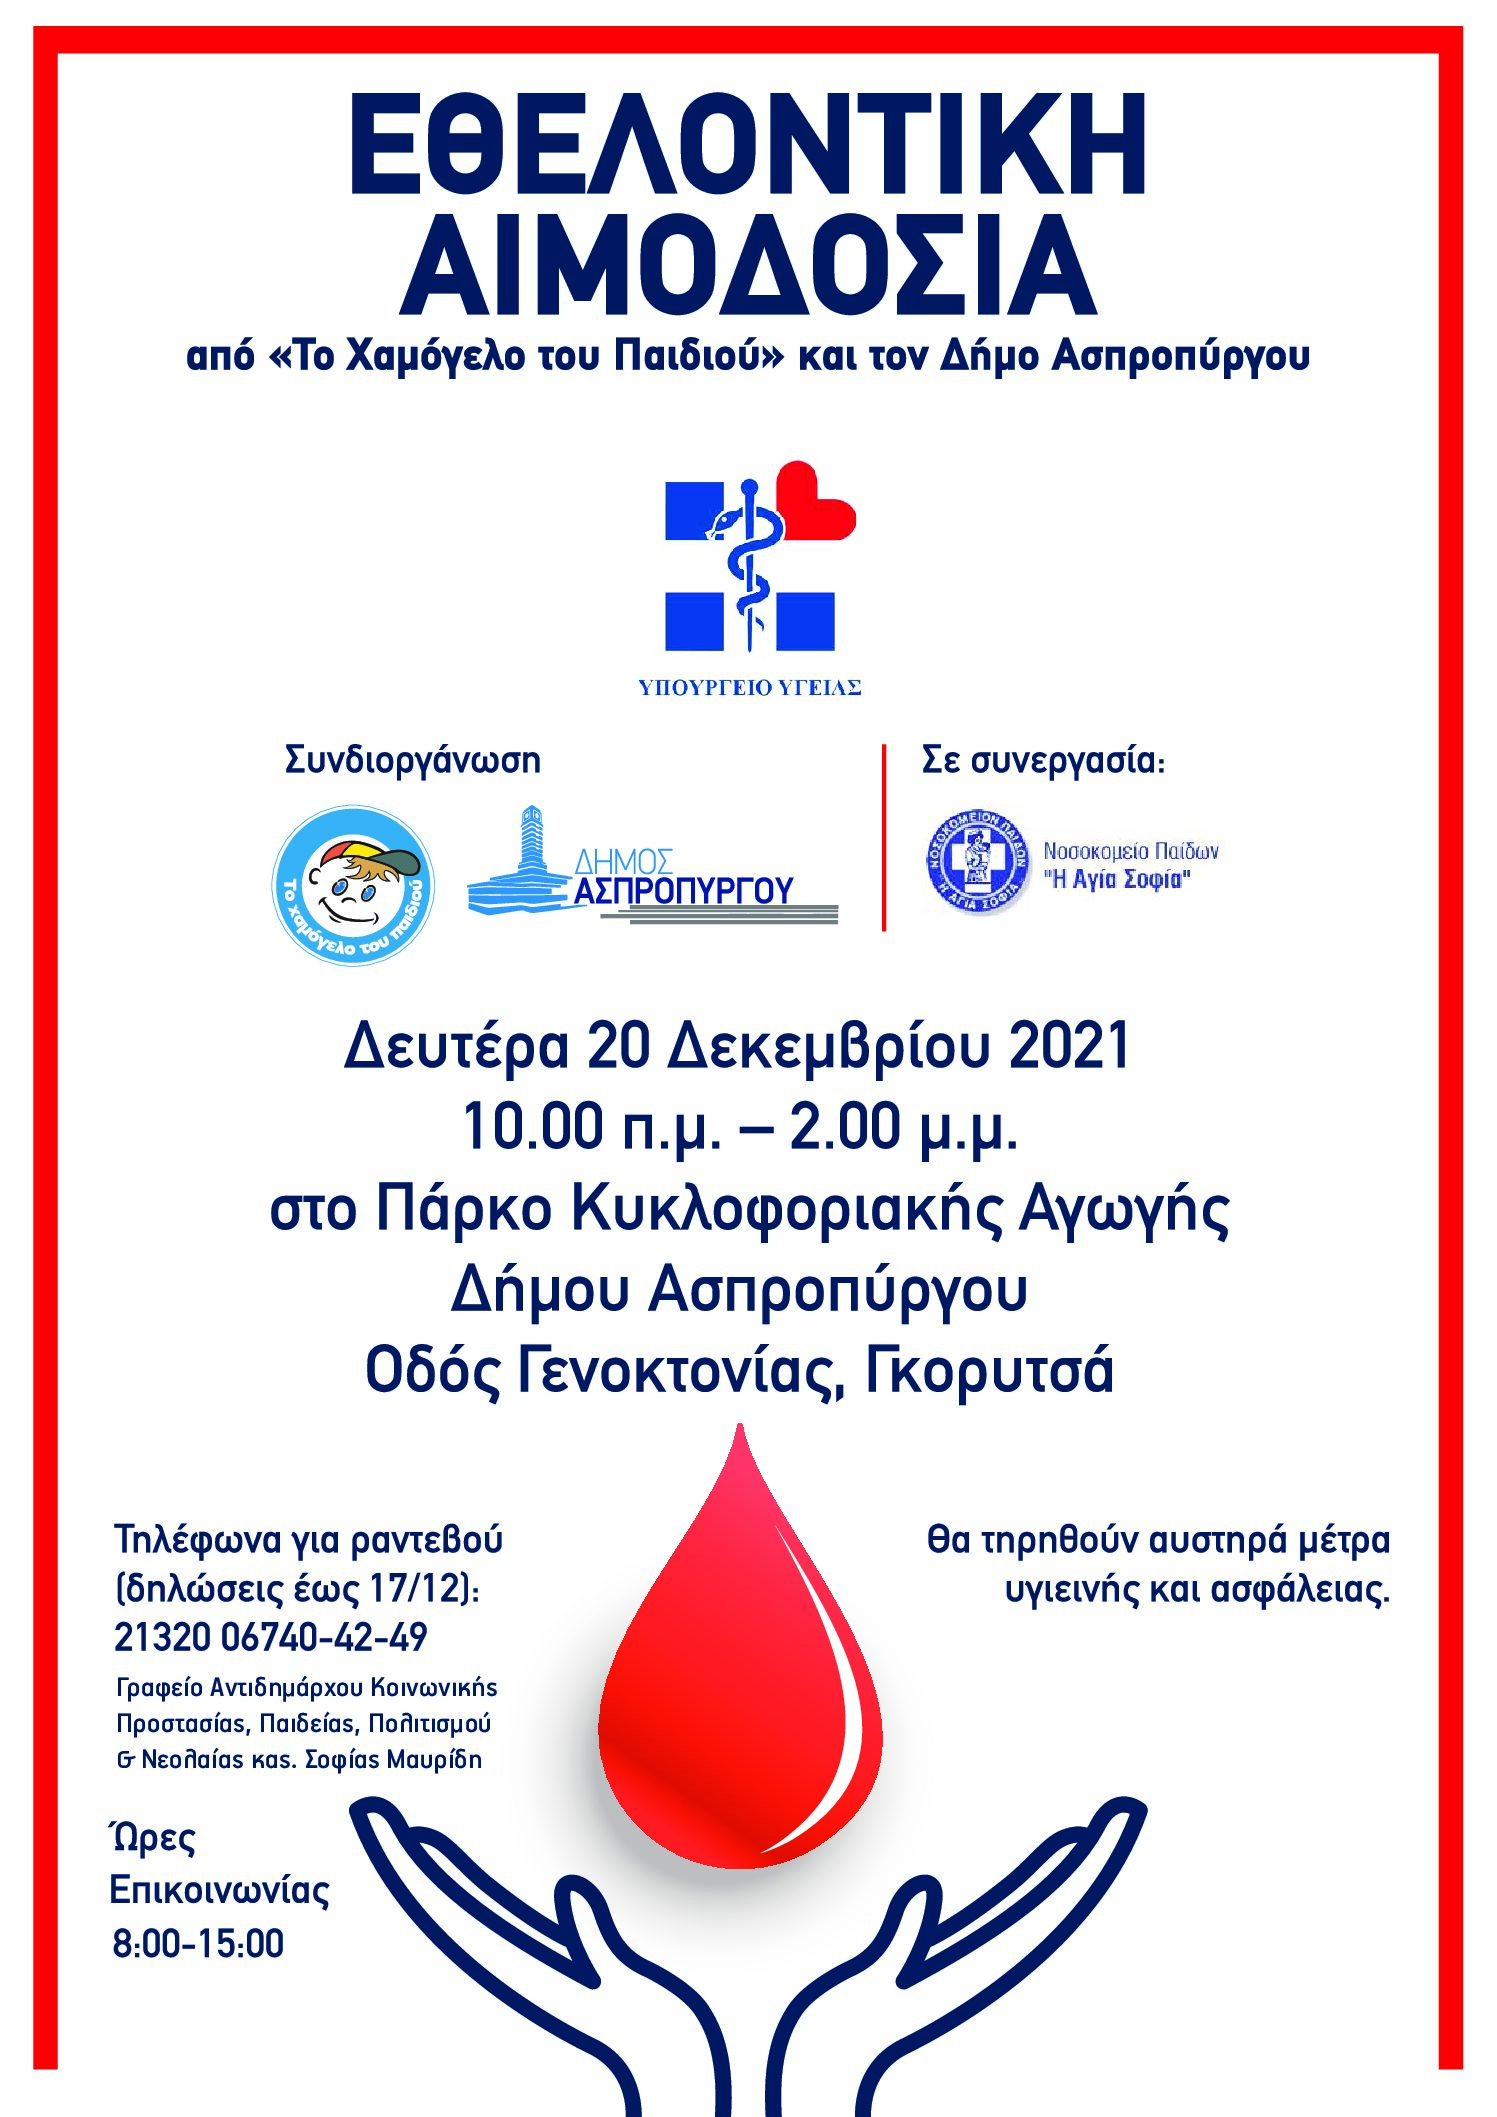 Δράση Εθελοντικής Αιμοδοσίας στον Δήμο Ασπροπύργου  (Πάρκο Κυκλοφοριακής Αγωγής Δήμου Ασπροπύργου – Γκορυτσά),  Δευτέρα 20 Δεκεμβρίου 2021